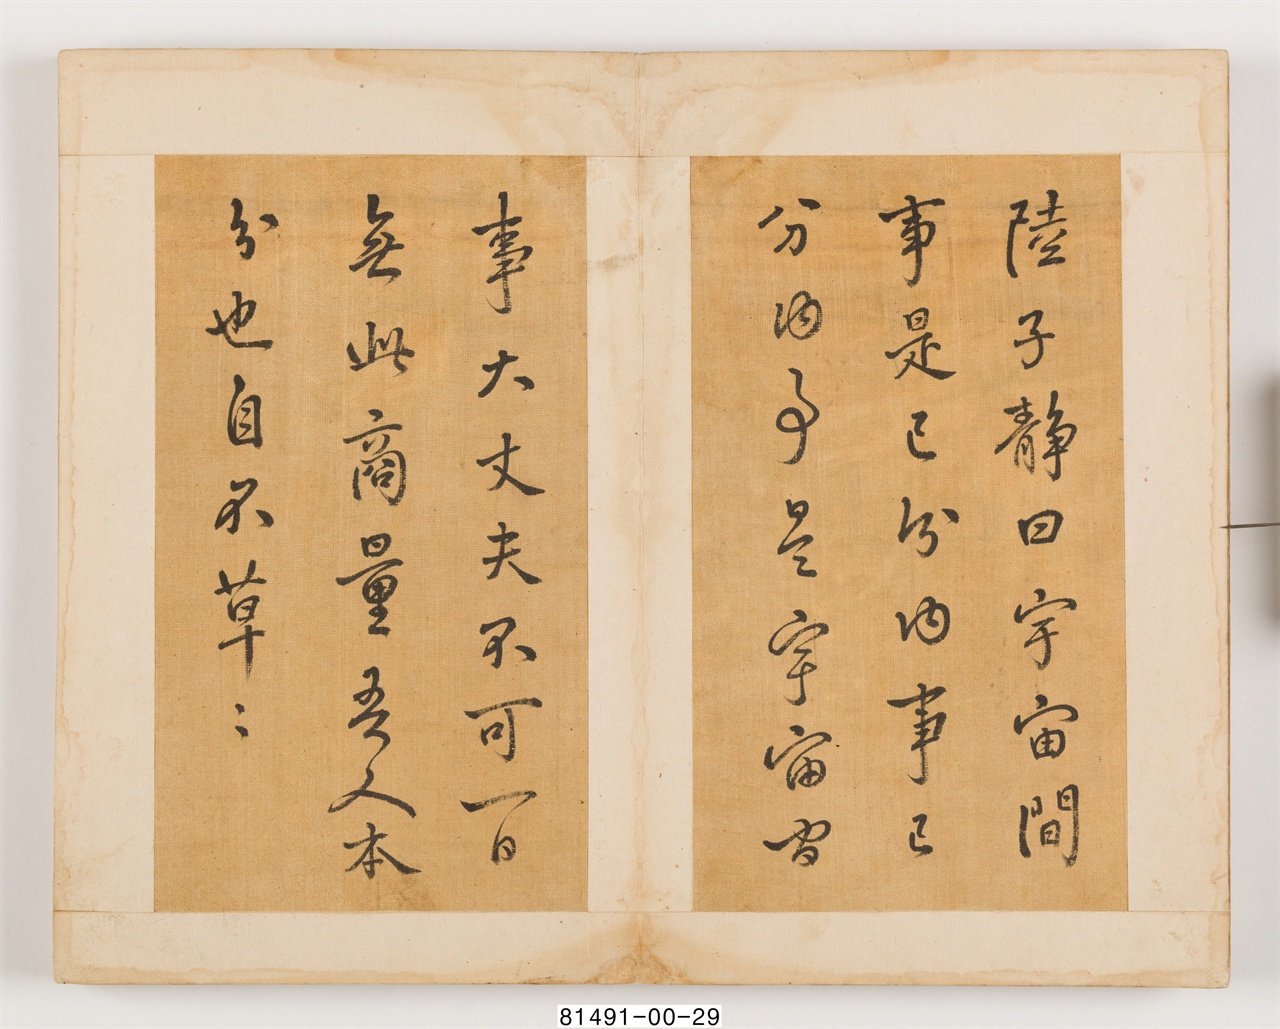 정약용(丁若鏞, 1762~1836)이 두 아들 학연(學淵, 1783~1859)과 학유(學遊, 1786~1855)에게 전하고픈 당부의 말을 적은 서첩이다.(사진출처 국립민속박물관)